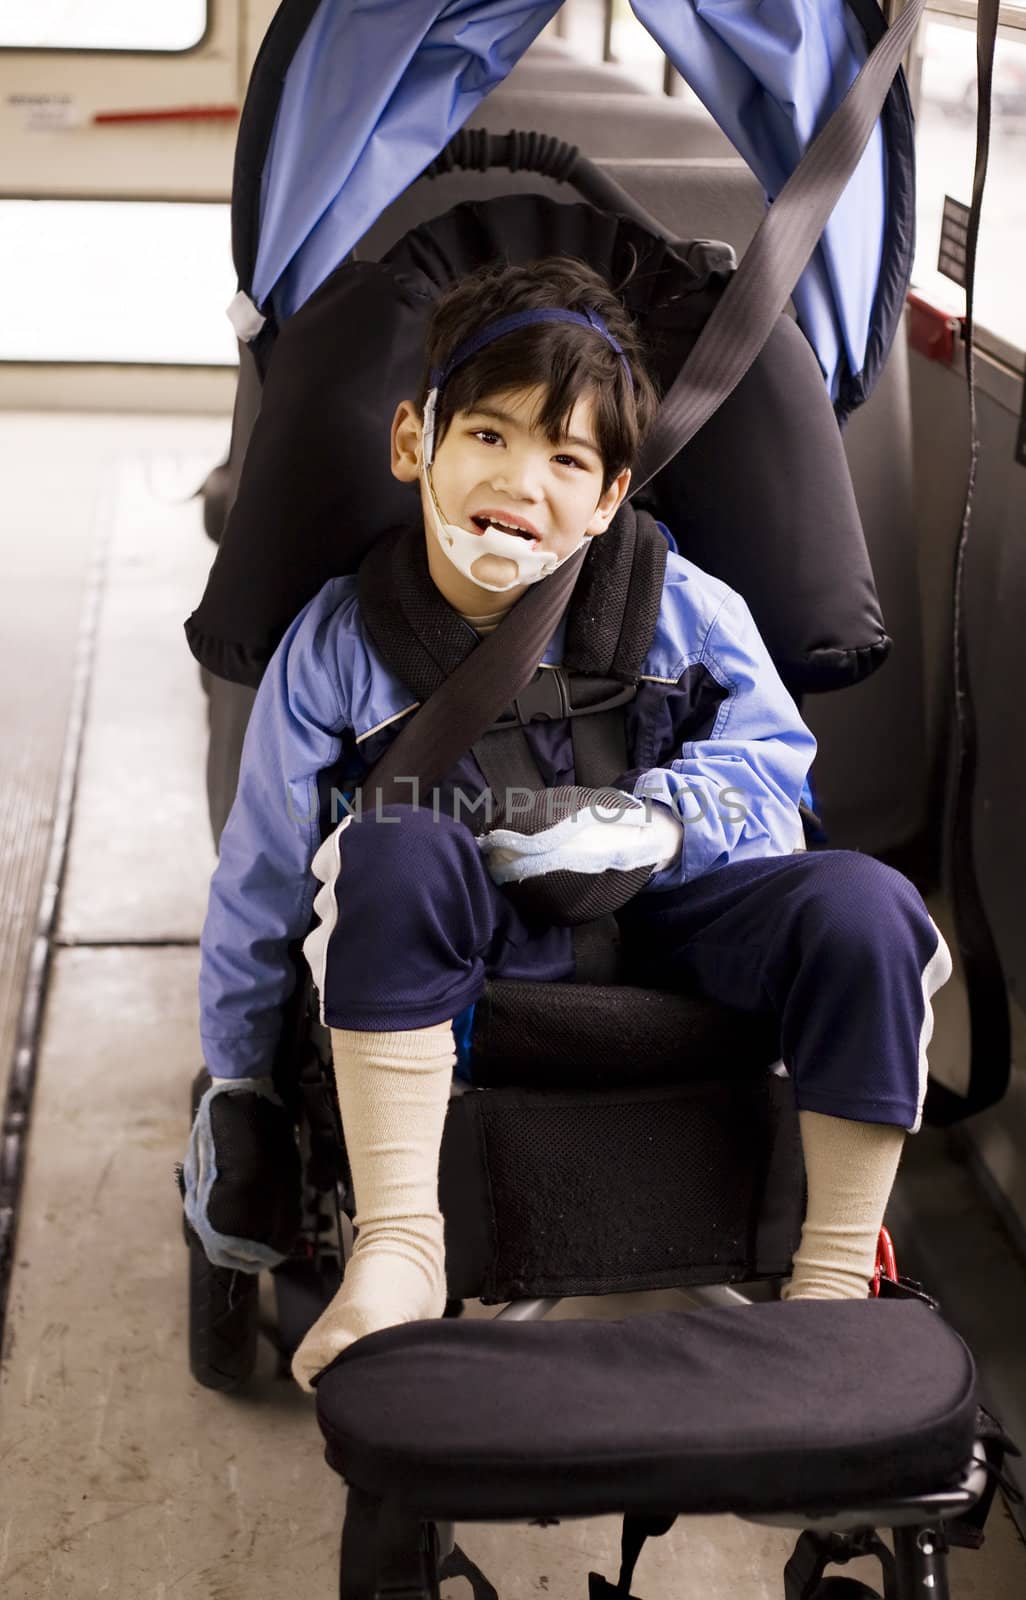 Disabled little preschool boy in wheelchair on bus by jarenwicklund